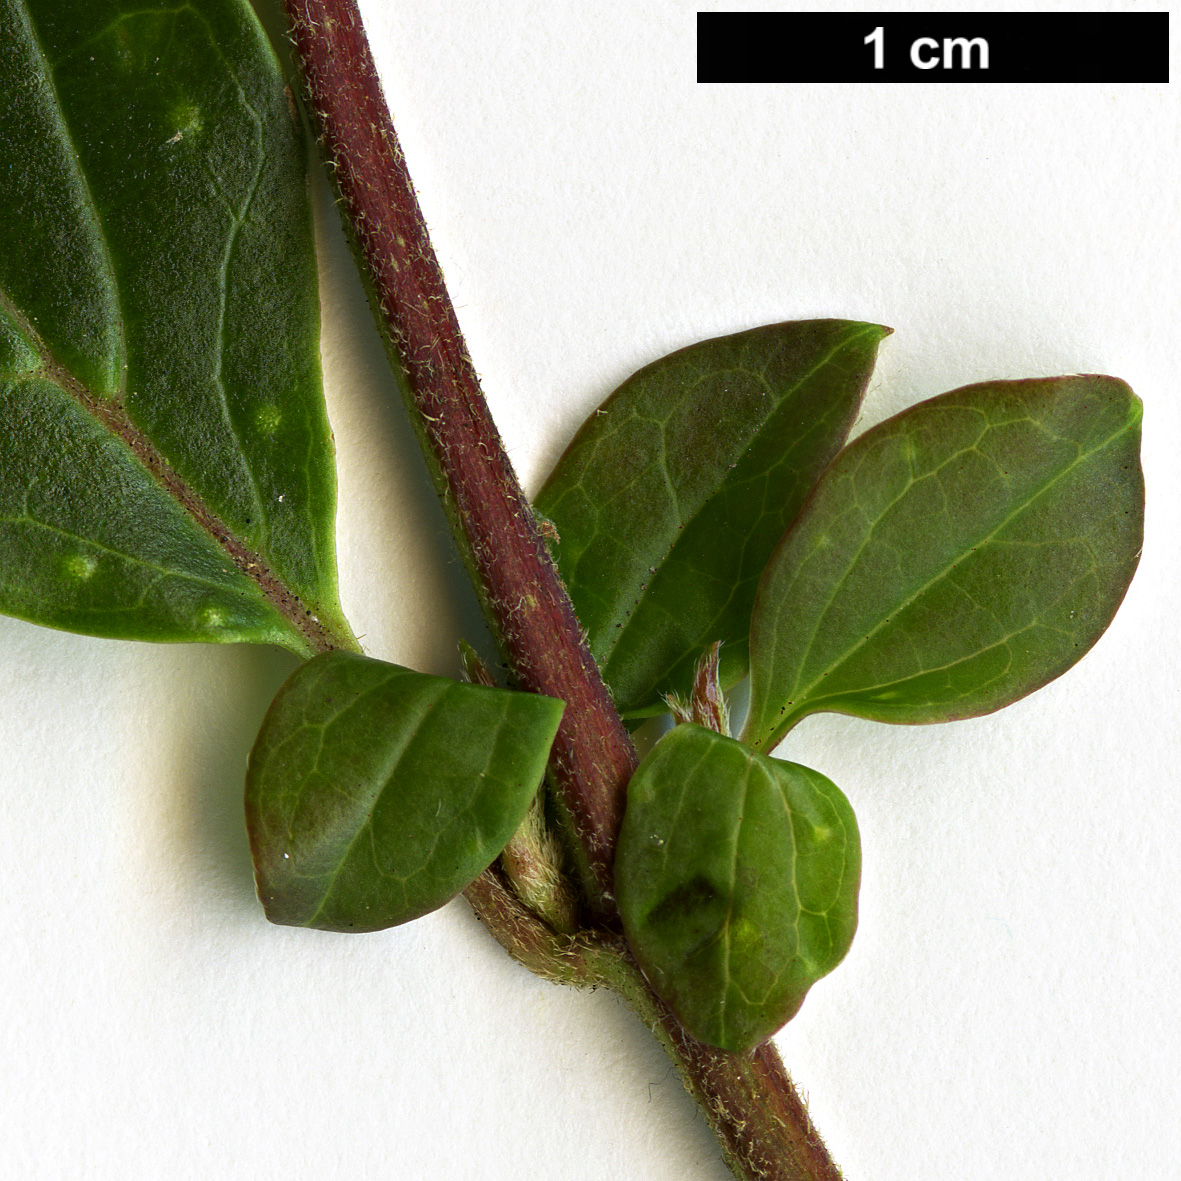 High resolution image: Family: Adoxaceae - Genus: Viburnum - Taxon: foetidum - SpeciesSub: var. rectangulatum